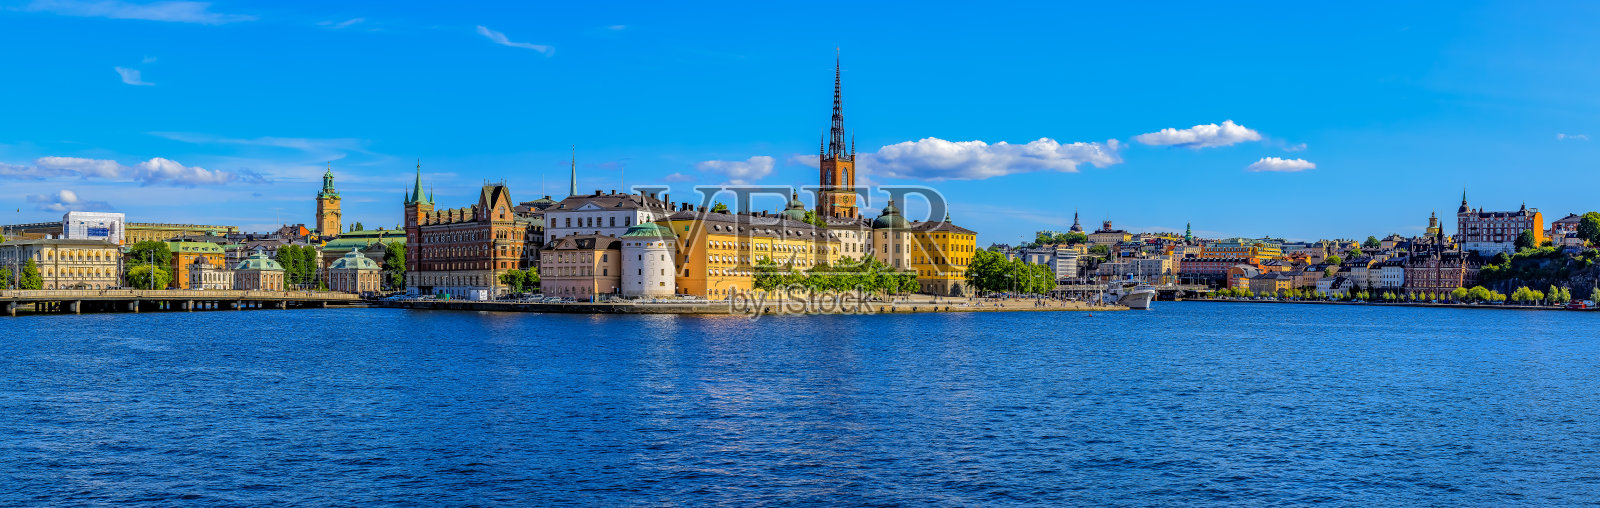 斯德哥尔摩老城Gamla Stan和瑞典Riddarholmen教堂全景照片摄影图片